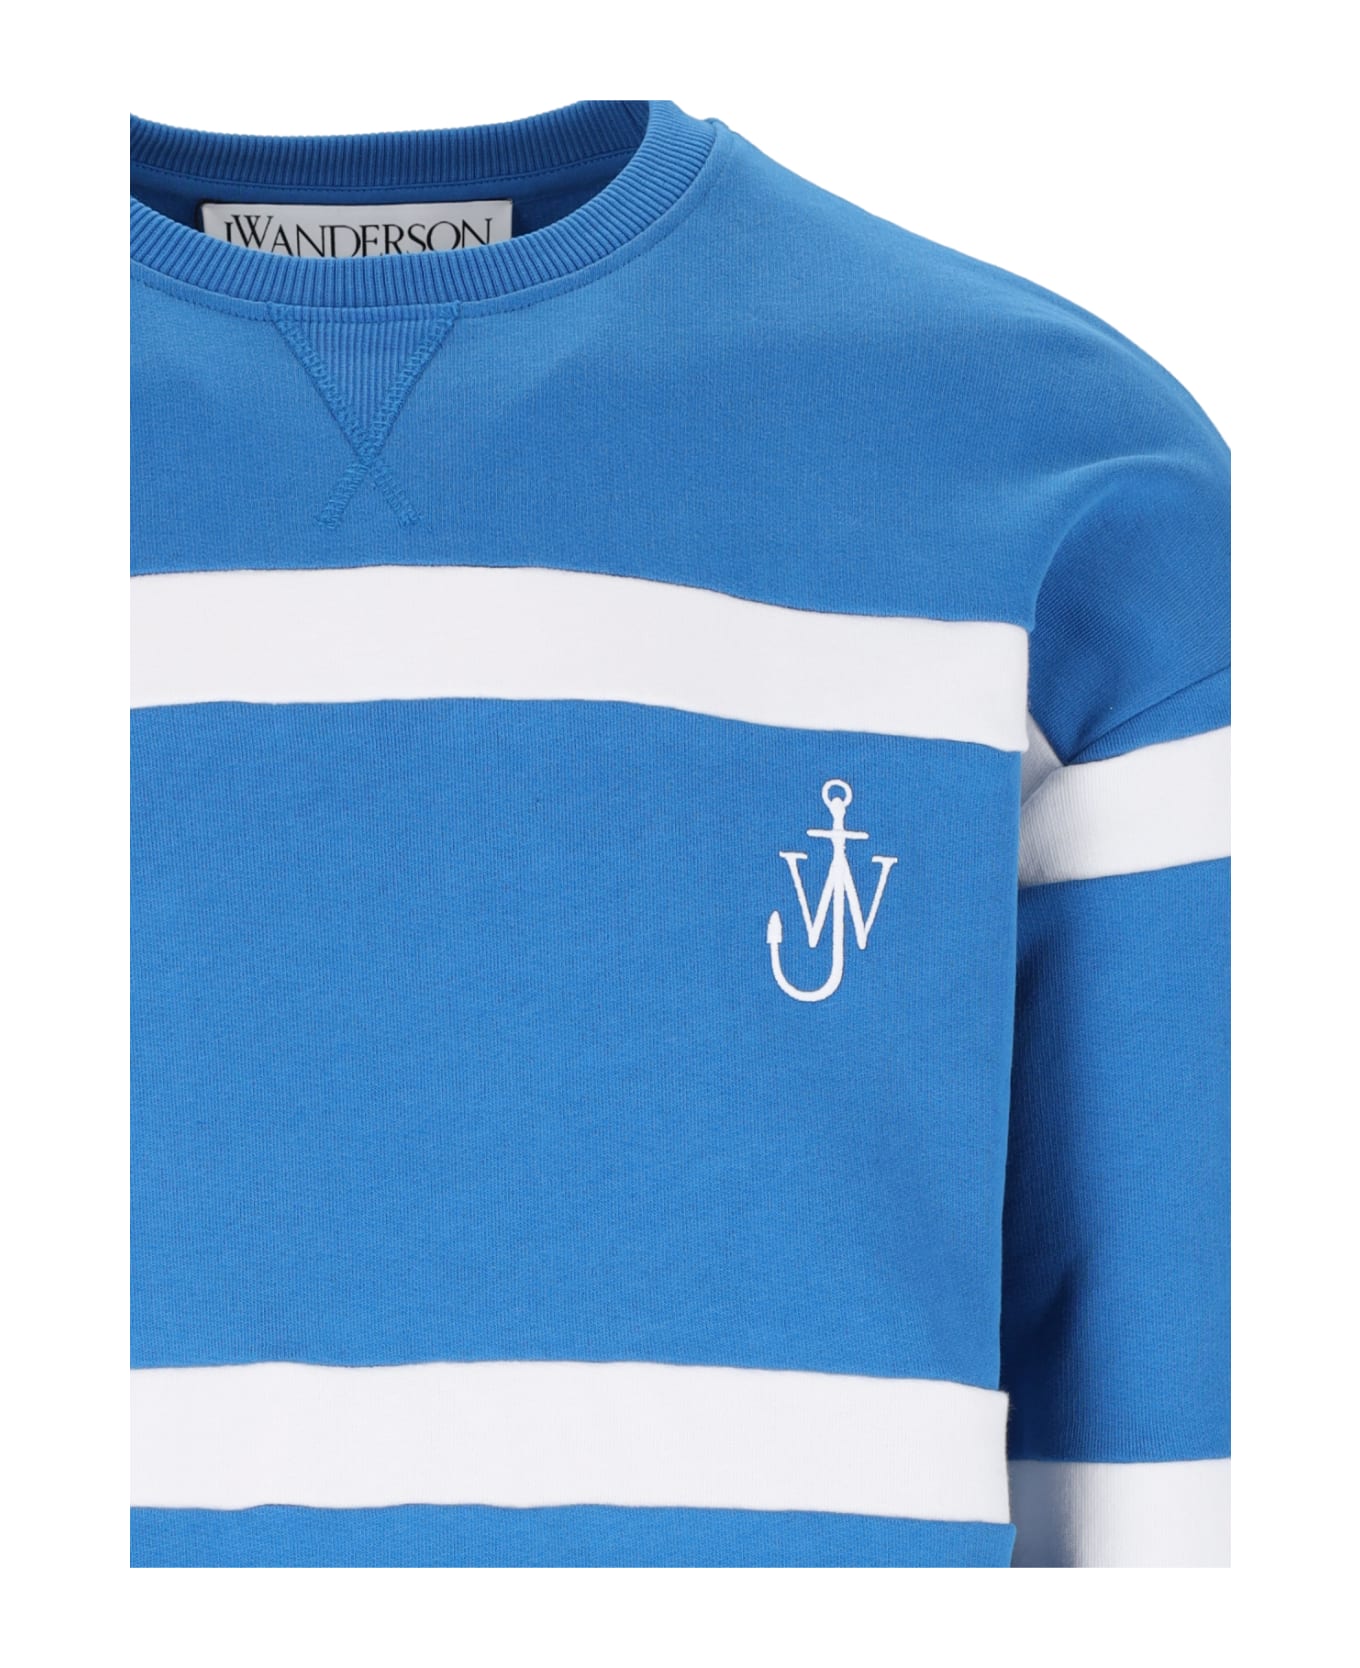 J.W. Anderson Striped Sweatshirt - Light Blue